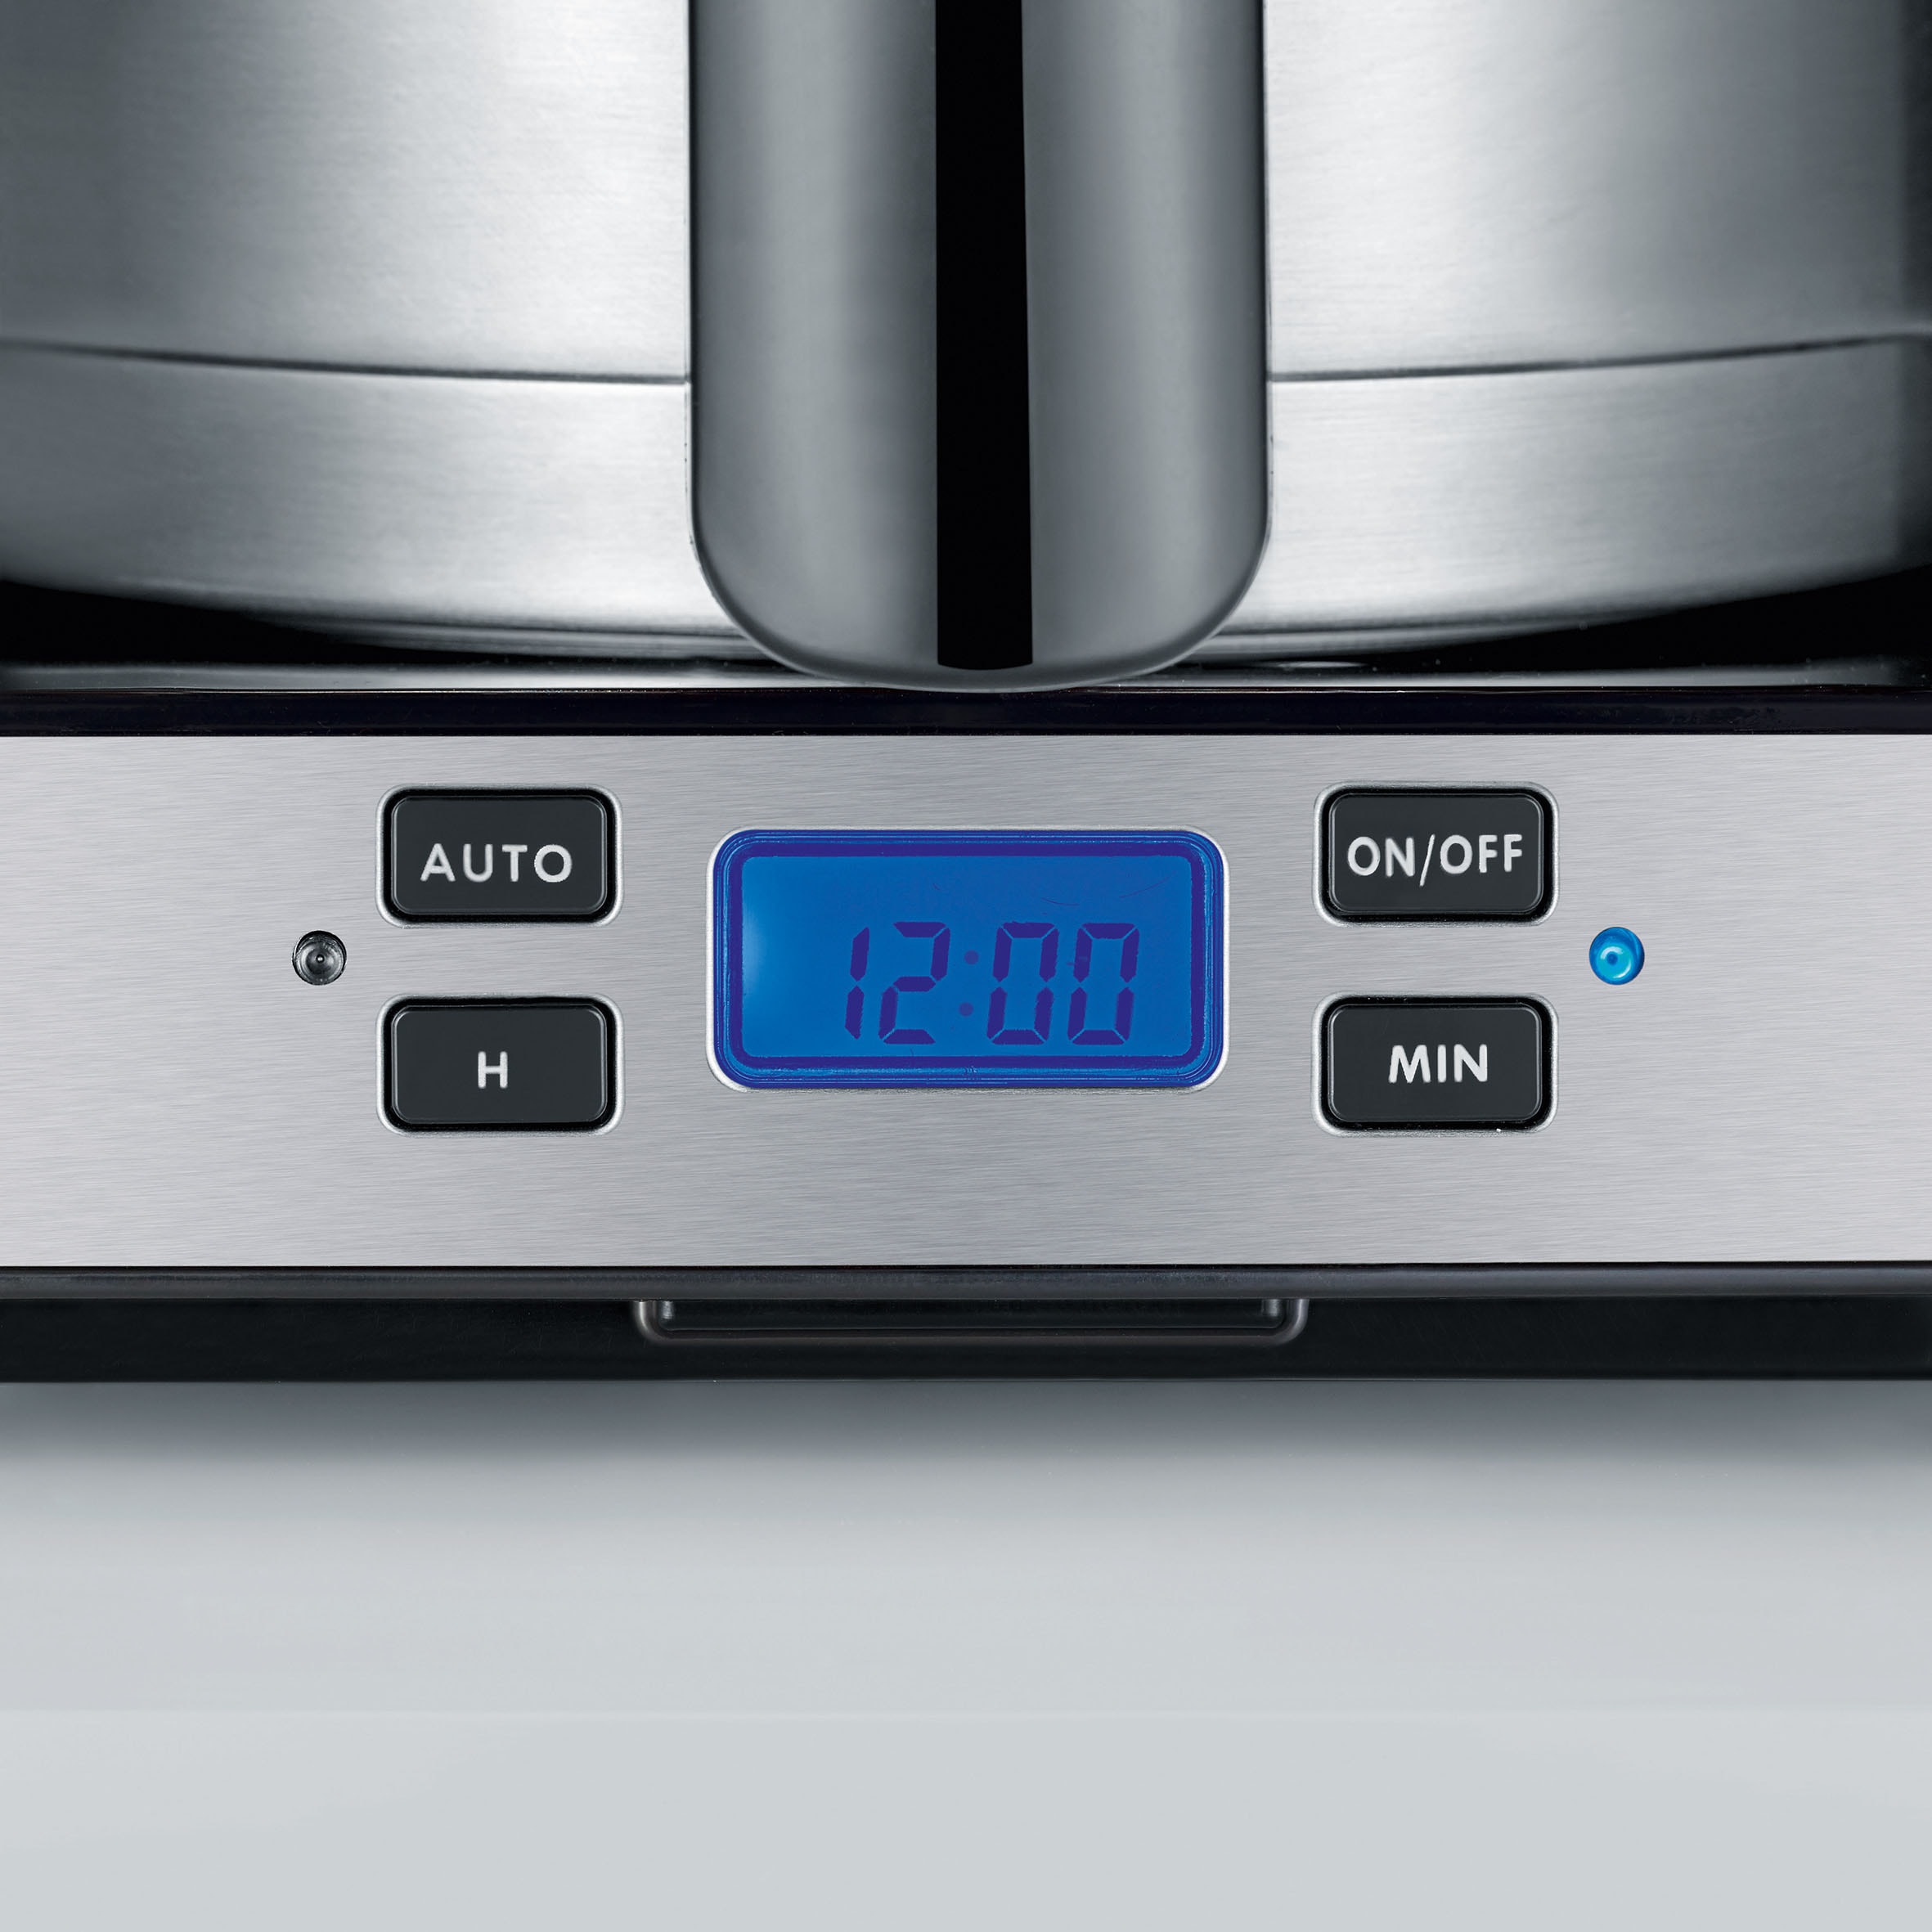 Graef Filterkaffeemaschine »FK 512«, 1 l Kaffeekanne, Korbfilter, 1x4, mit Timer und Thermokanne